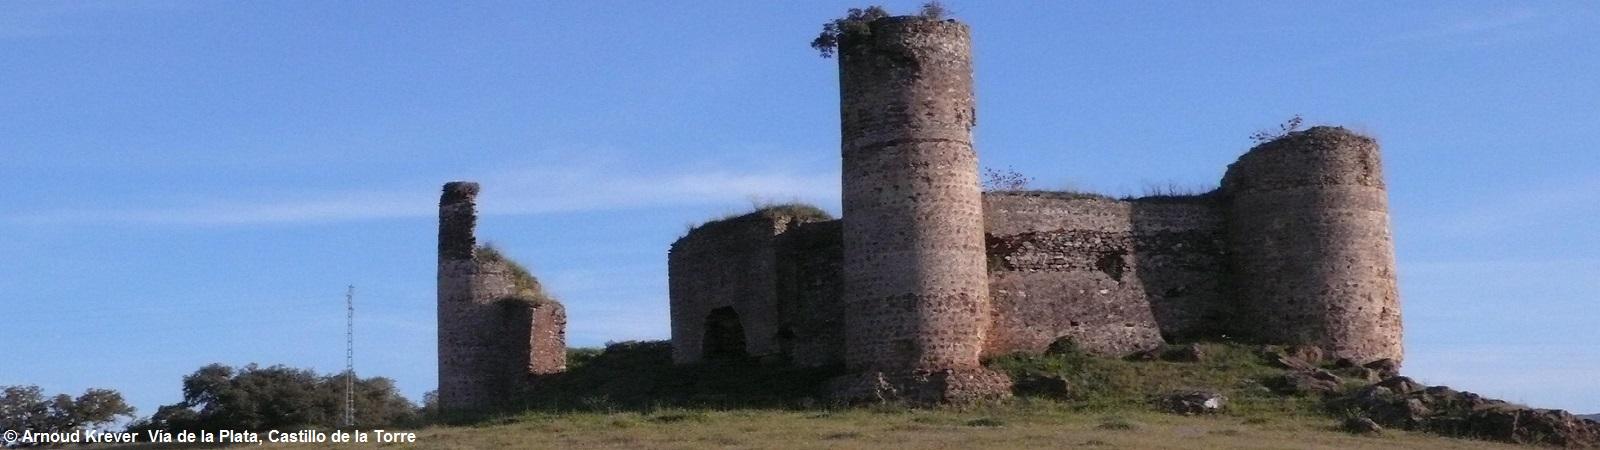 Plata0183 het Castillo de la Torres